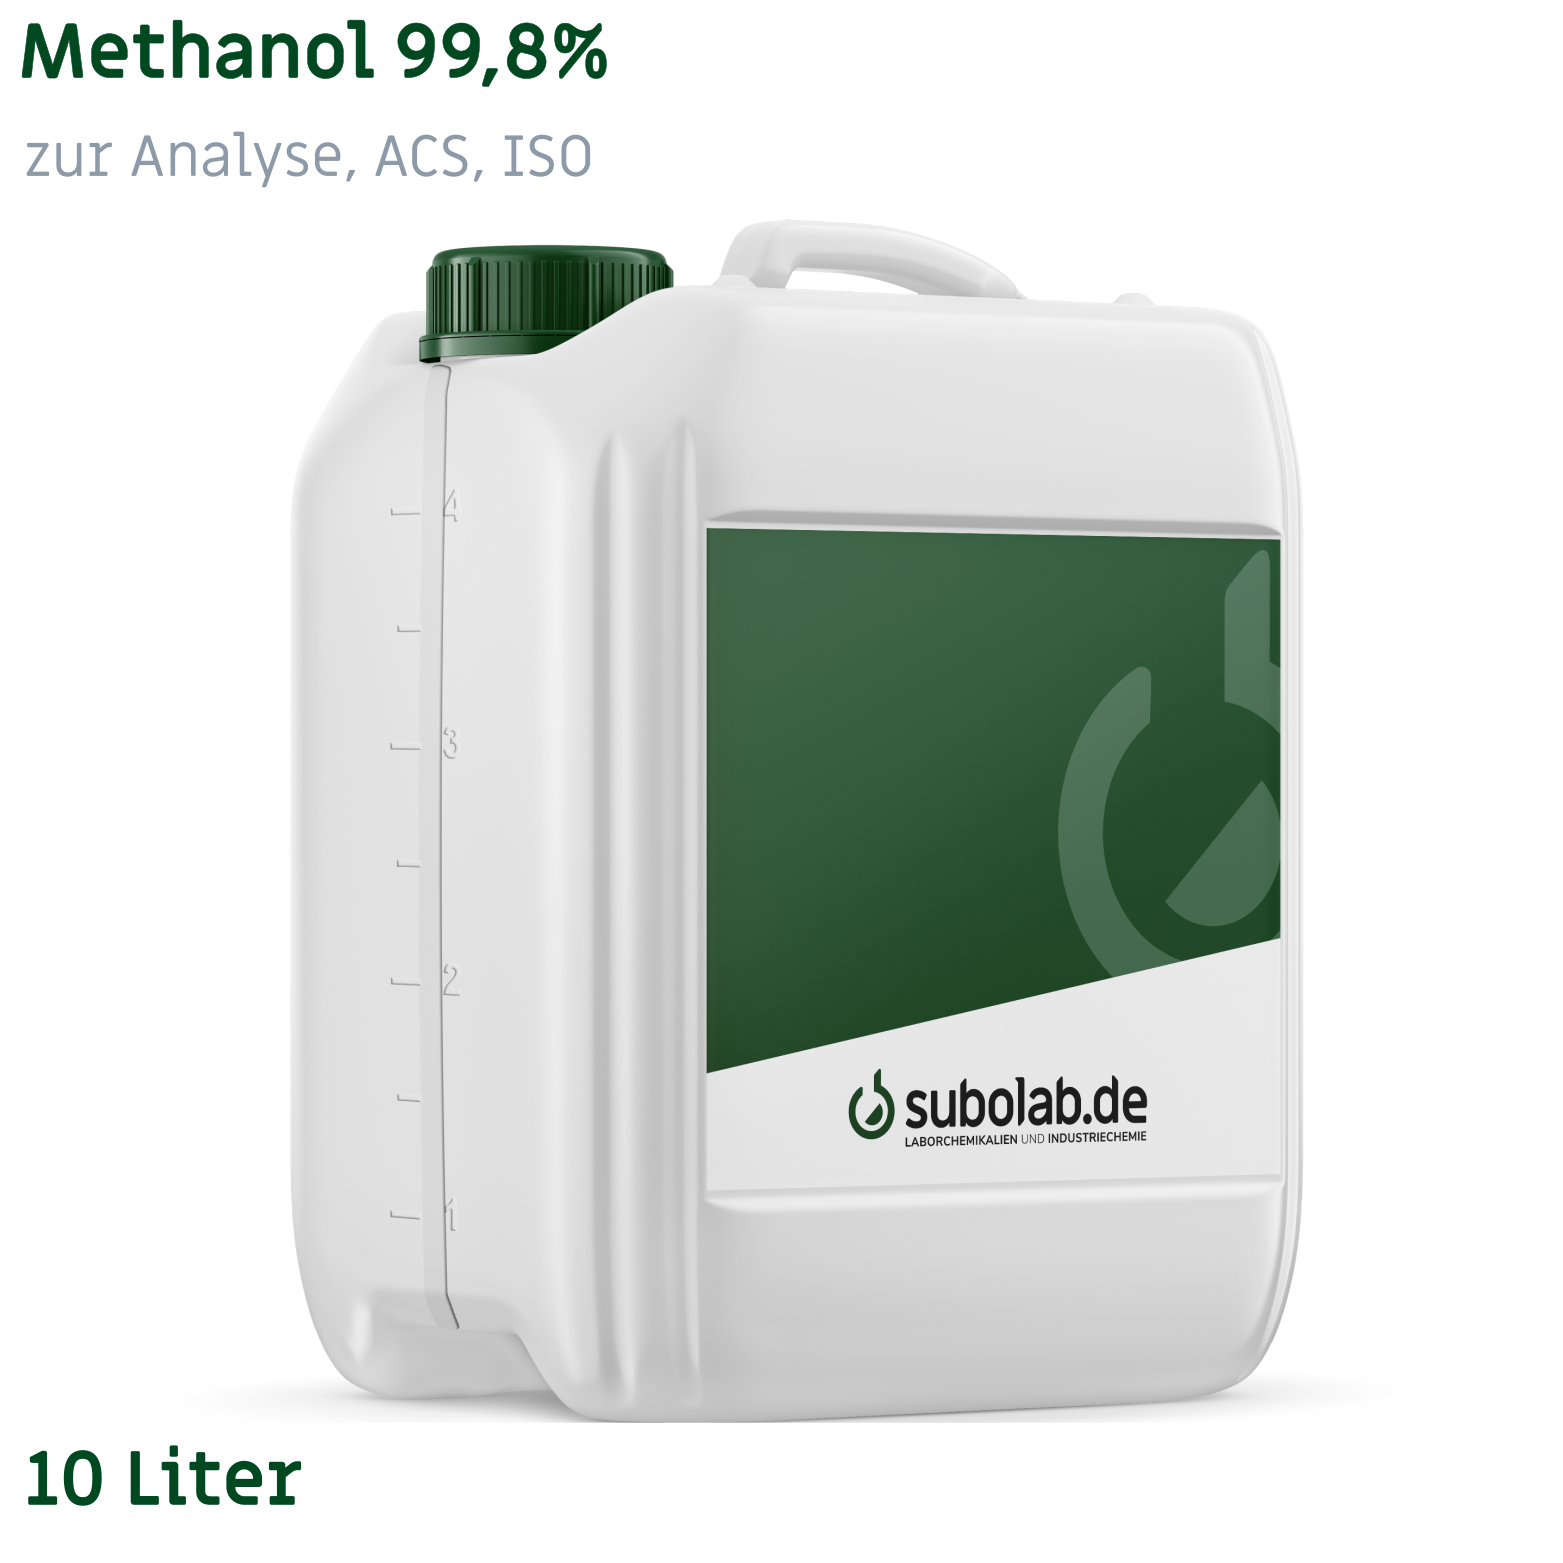 Bild von Methanol 99,8% zur Analyse, ACS, ISO (10 Liter)